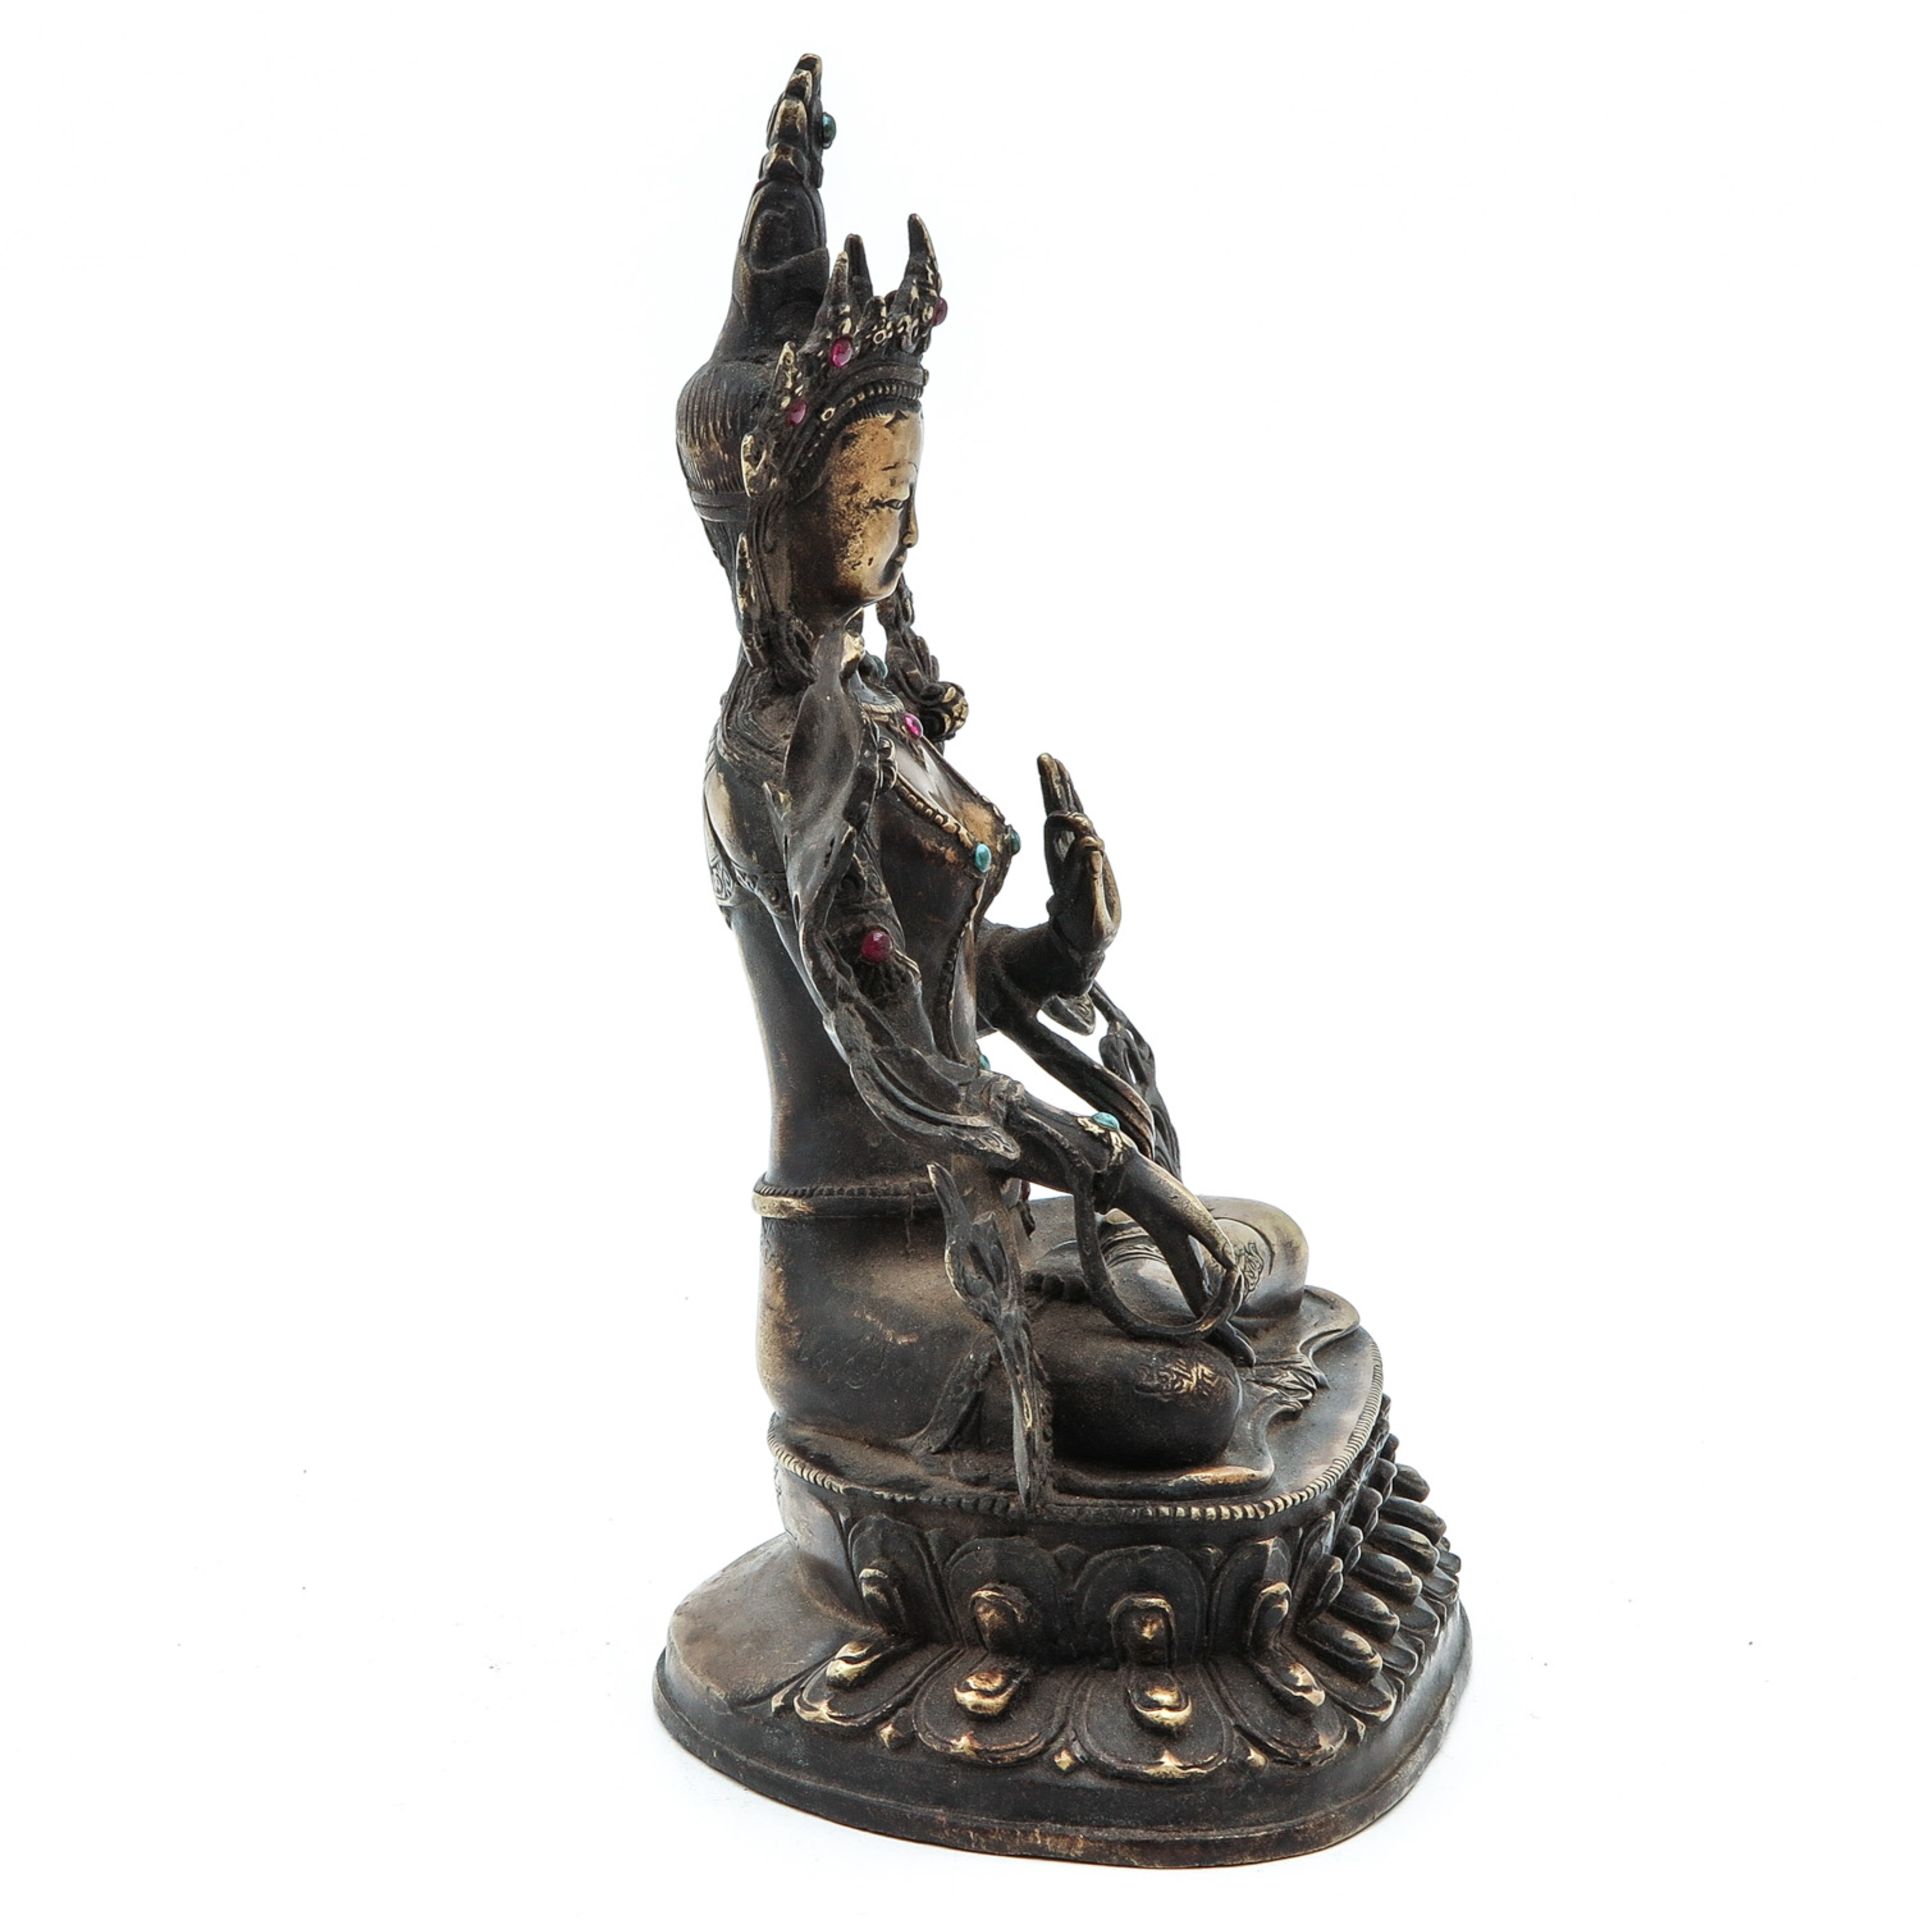 A Bronze Buddha Sculpture - Image 4 of 10